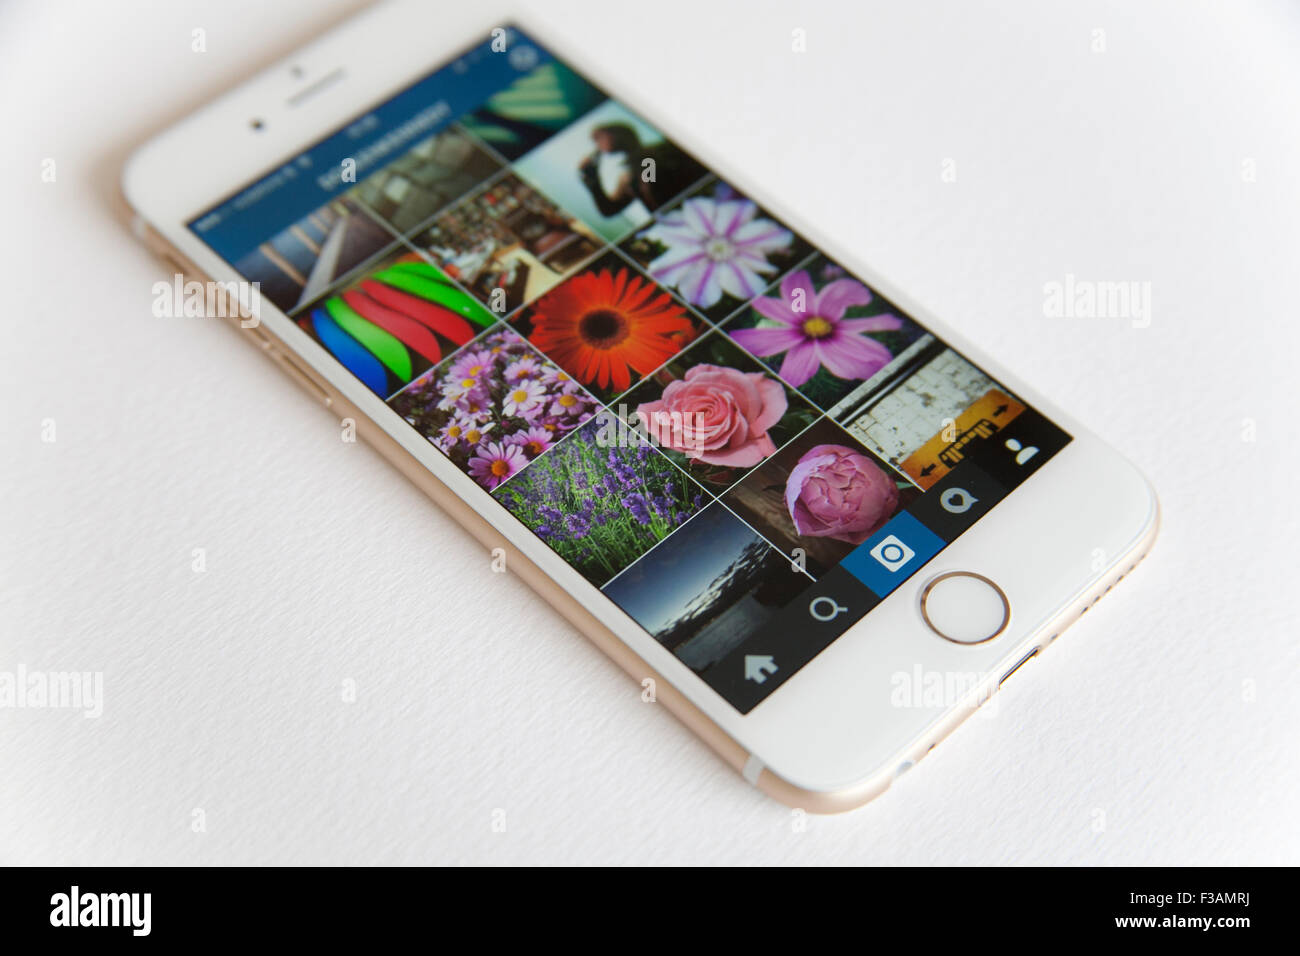 Oro e Bianco Apple iPhone 6 con un Instagram feed foto contro uno sfondo bianco Foto Stock